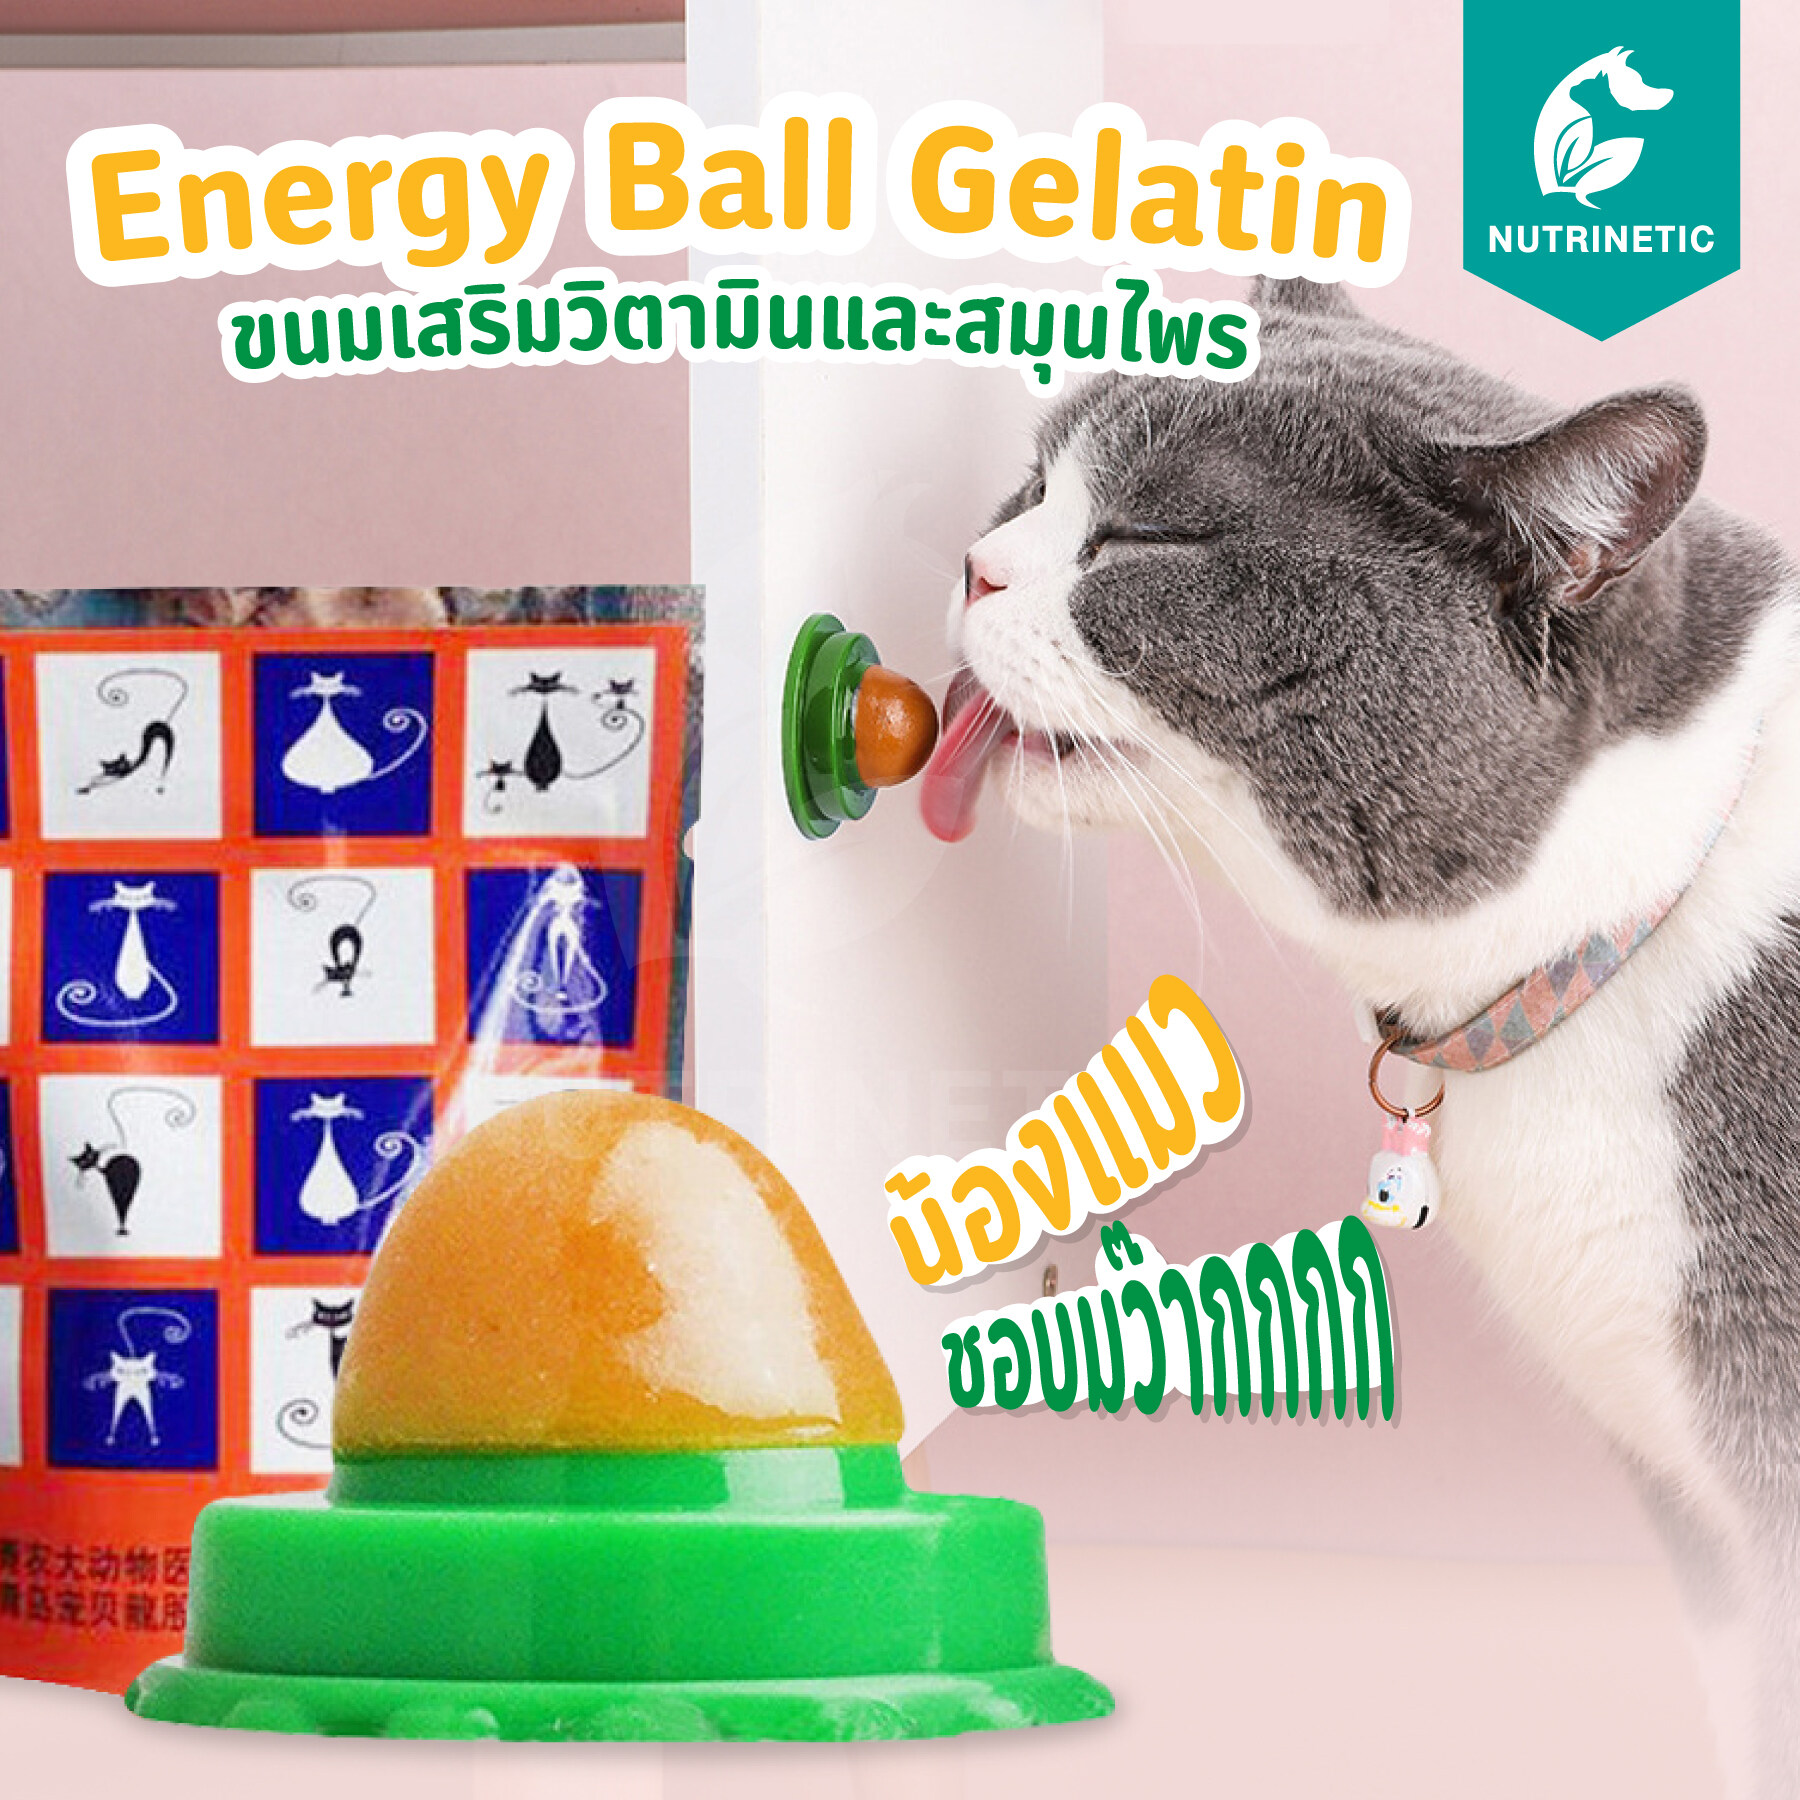 Energy Ball Gelatin ขนมเสริมวิตามินสำหรับแมว มีส่วนผสม catmint wheatgrass บำรุงสุขภาพ